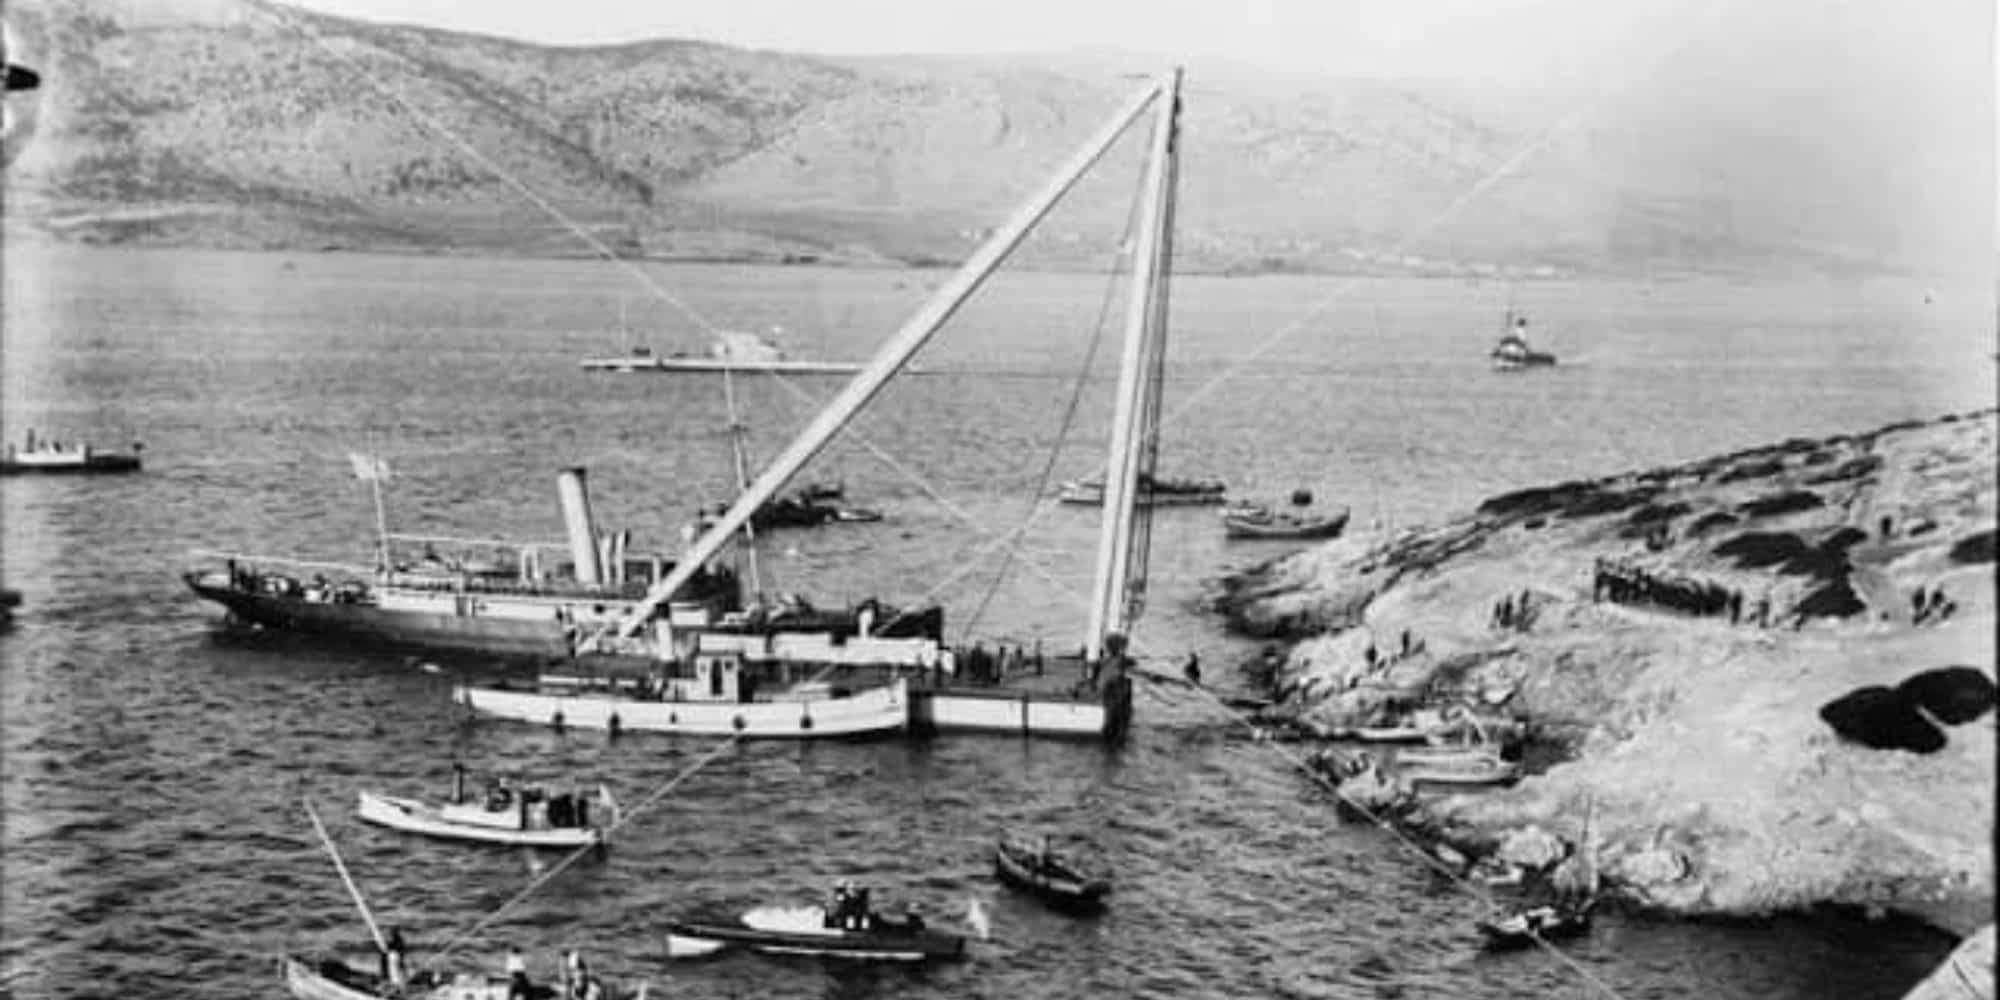 Σαν σήμερα: 100 χρόνια από το ναυάγιο του «Αλέξανδρου Ζ» έξω από τον Πειραιά - Η μεγαλύτερη ναυτική τραγωδία στην Ελλάδα με 297 θύματα